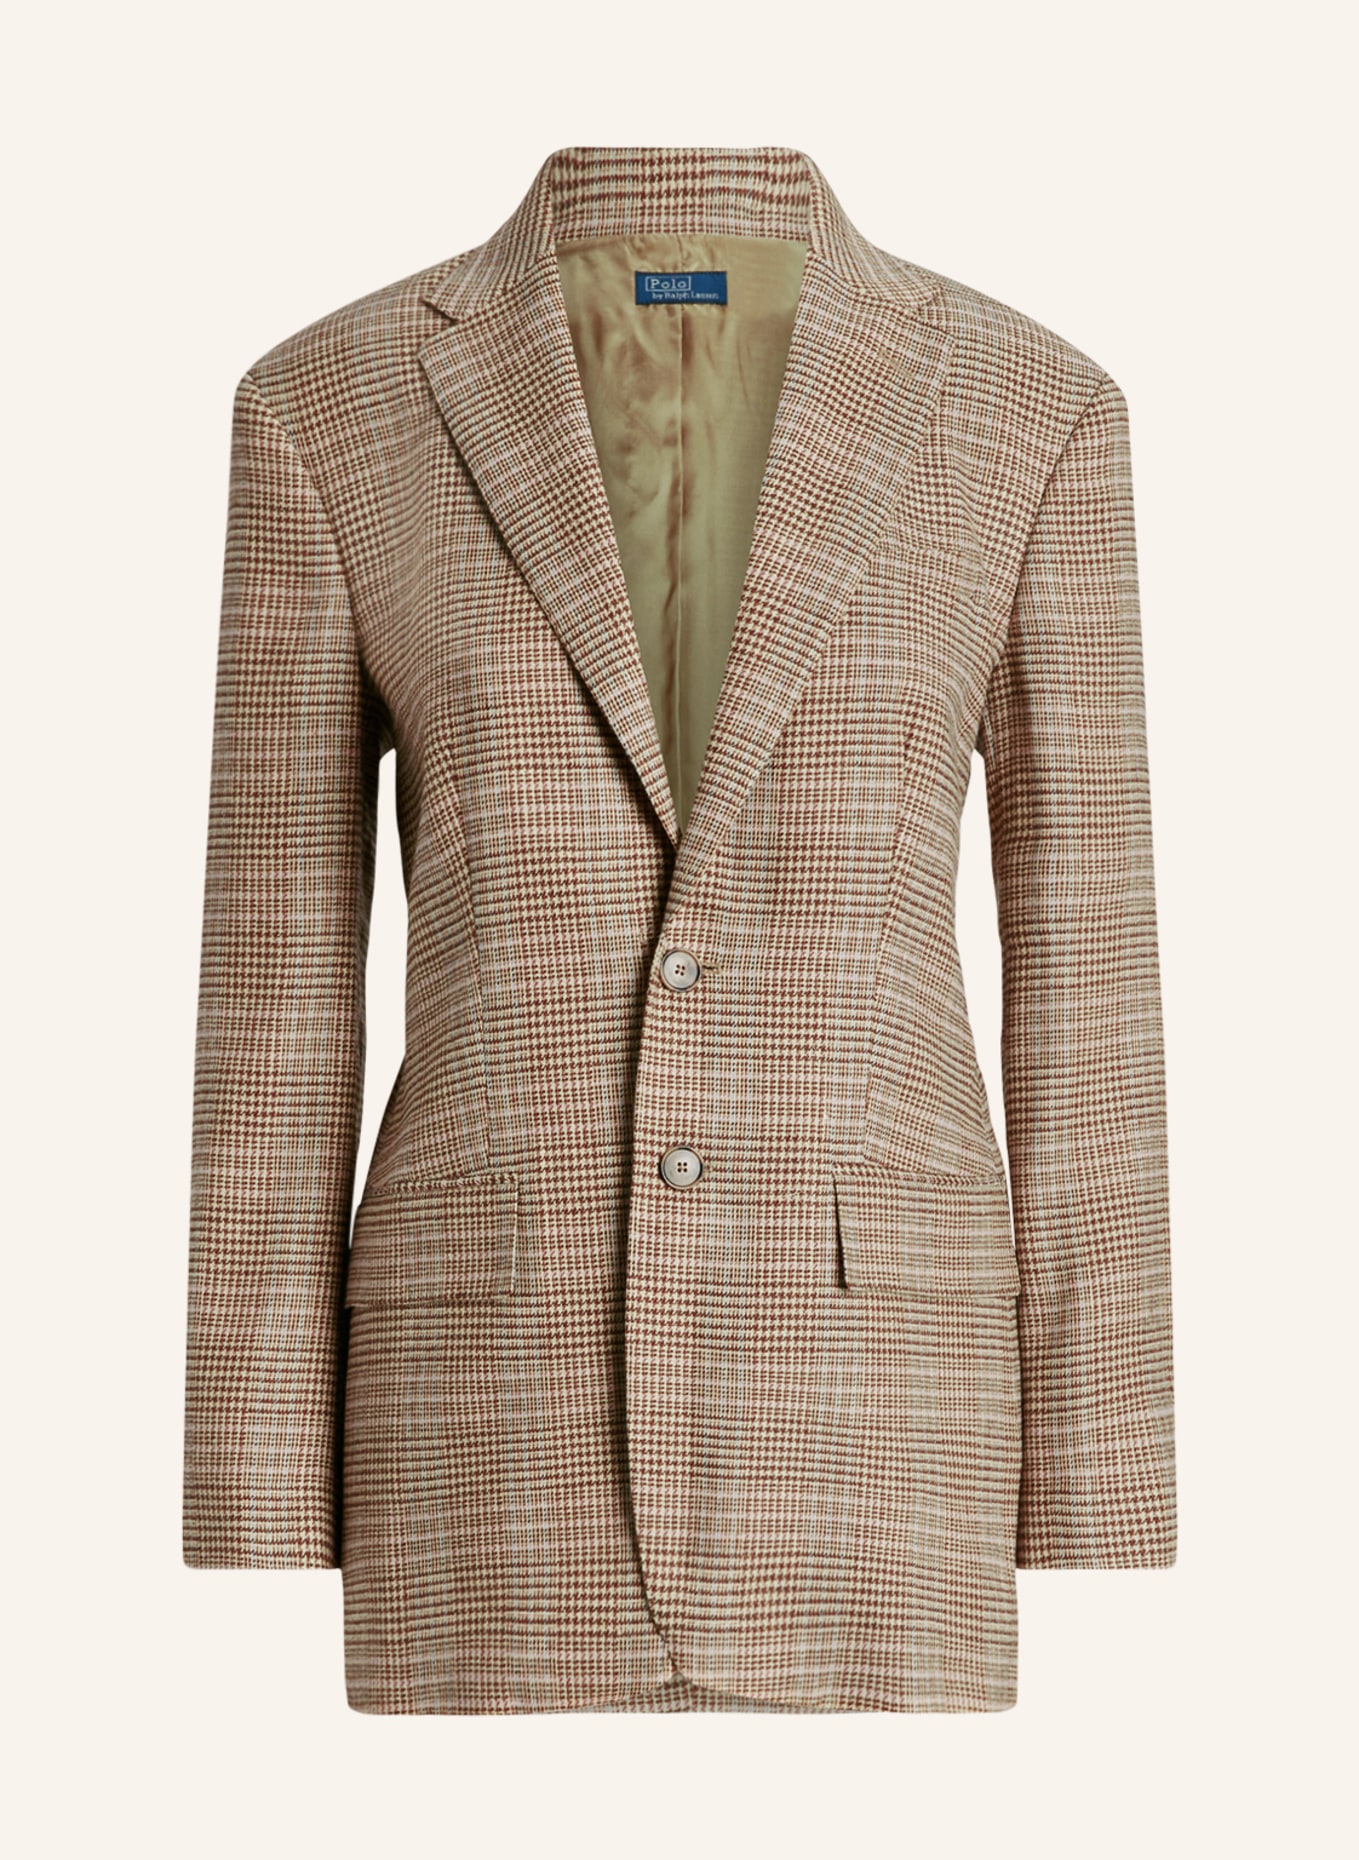 POLO RALPH LAUREN Blazer with linen, Color: DARK BROWN/ BEIGE (Image 1)